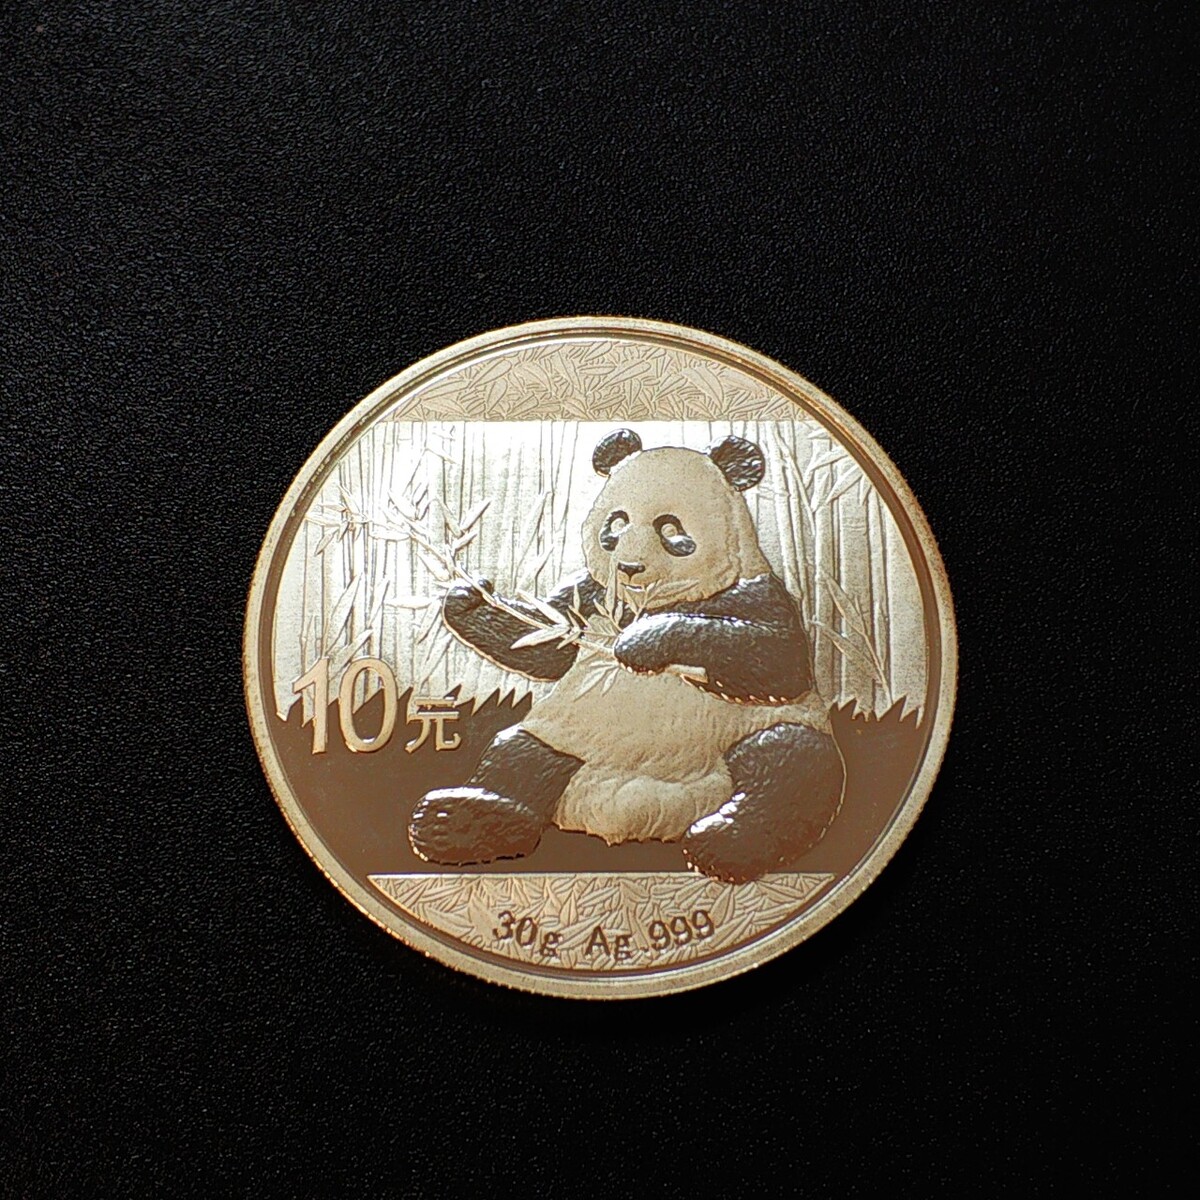 2o14纪念币,中国央行发行草书纪念币套1亿枚